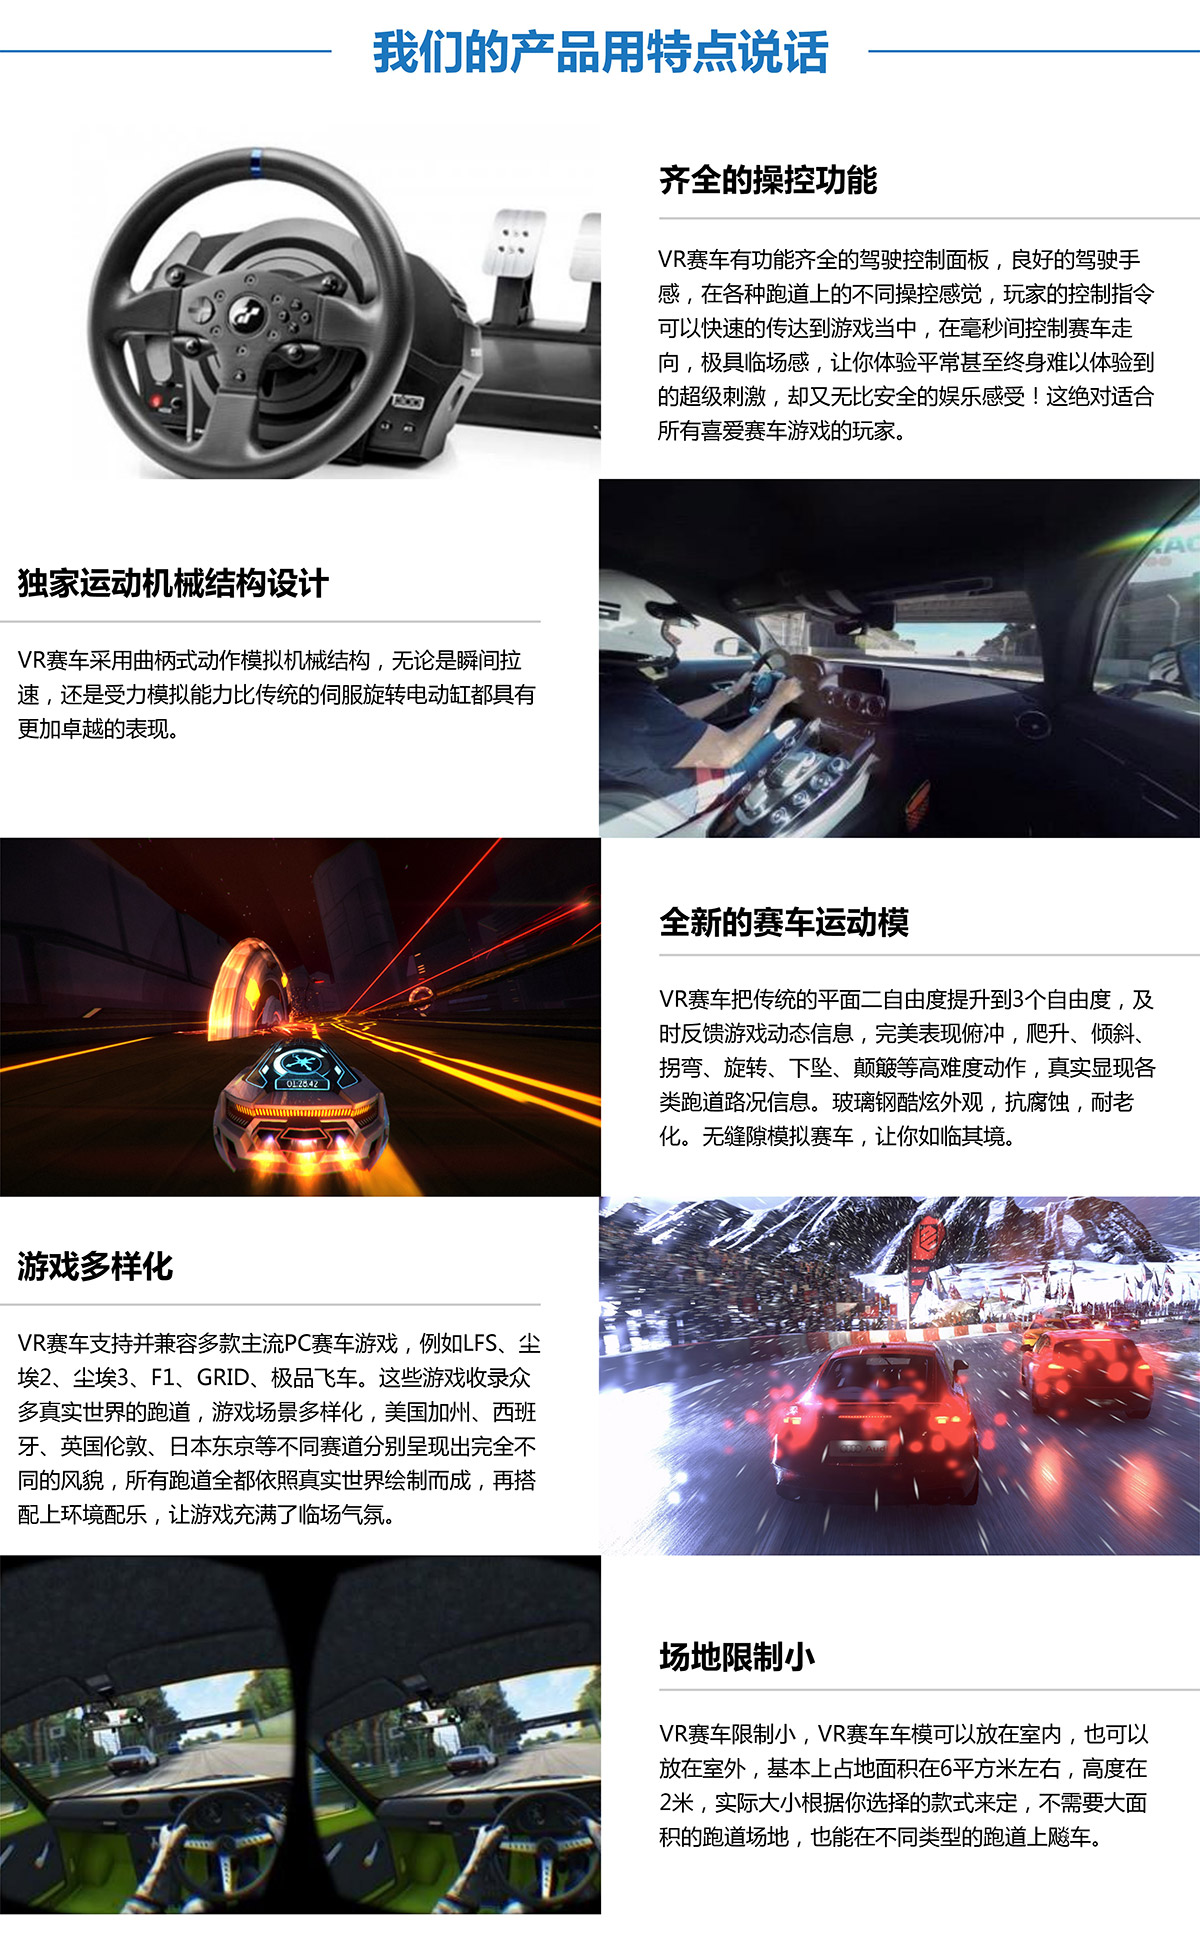 环幕影院虚拟VR赛车产品用特点说话.jpg